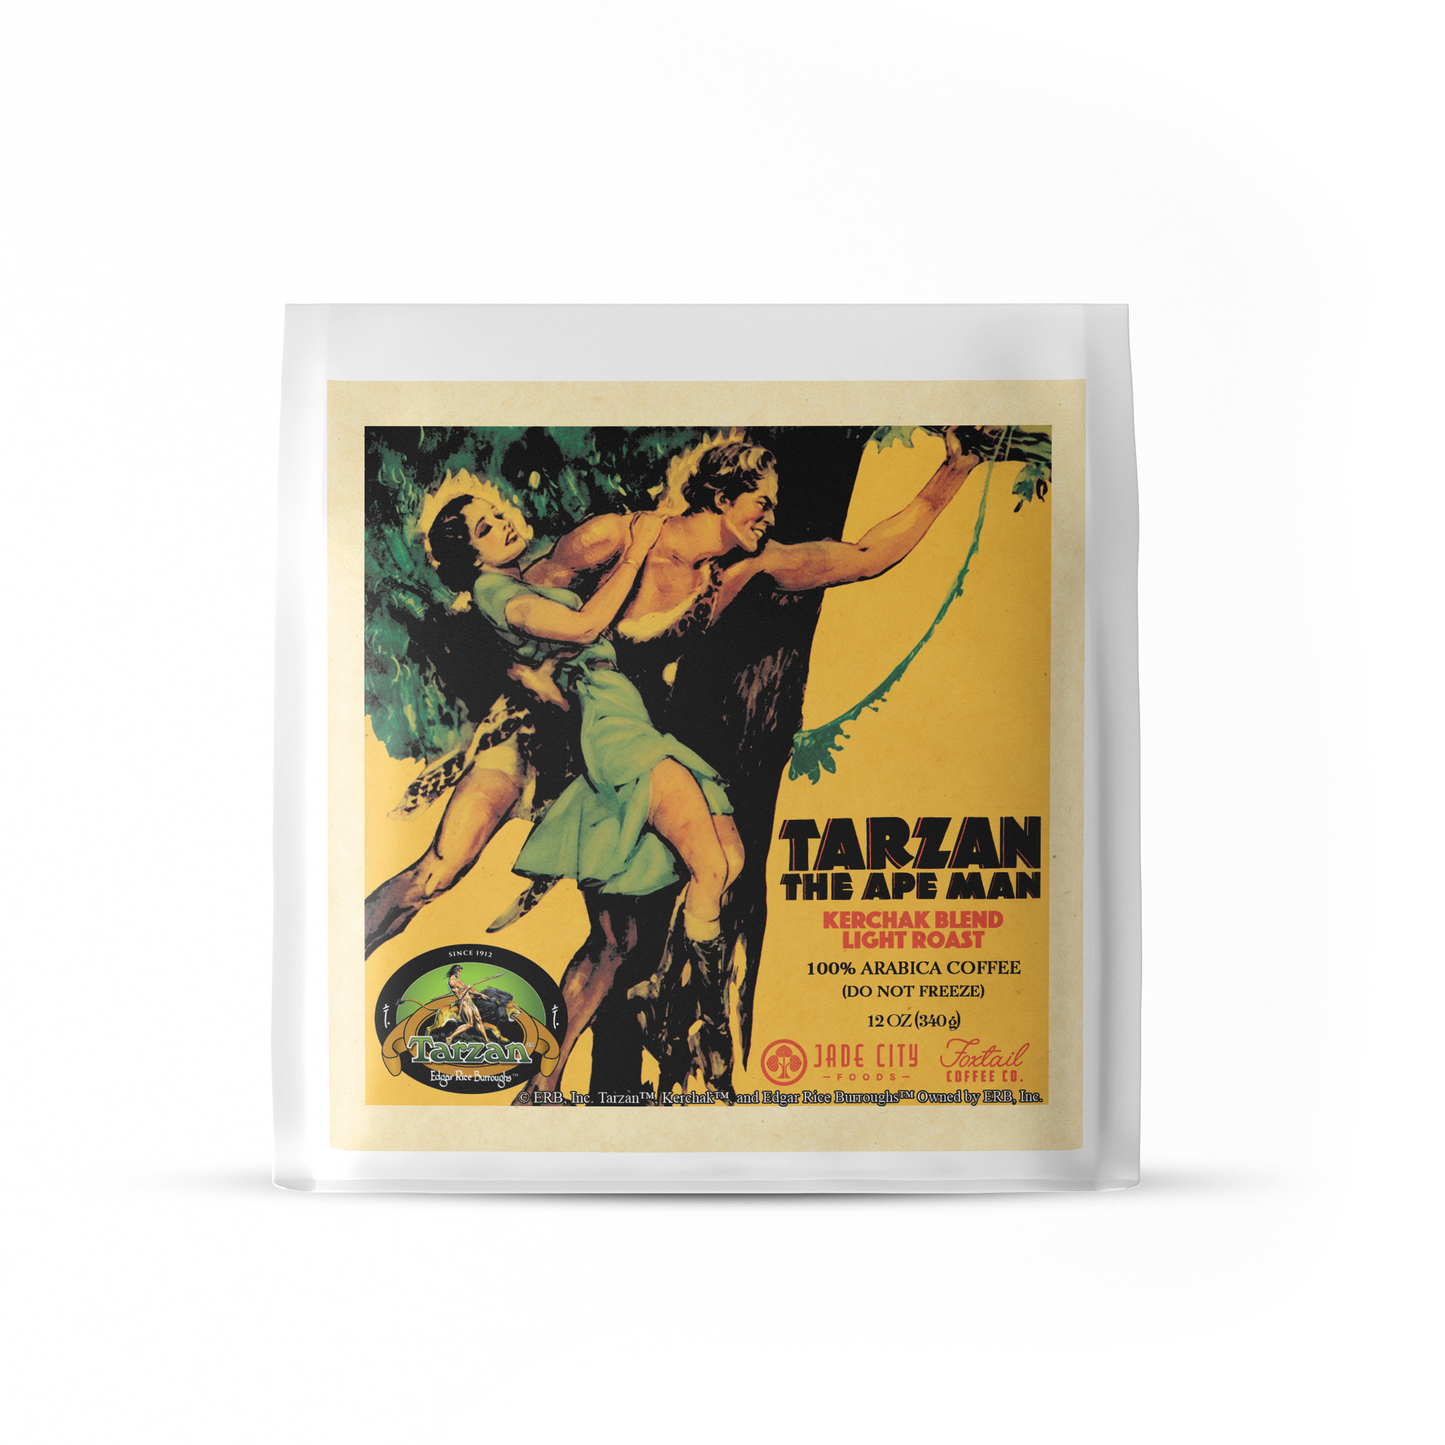 Tarzan's Kerchak Blend : Light Roast Coffee